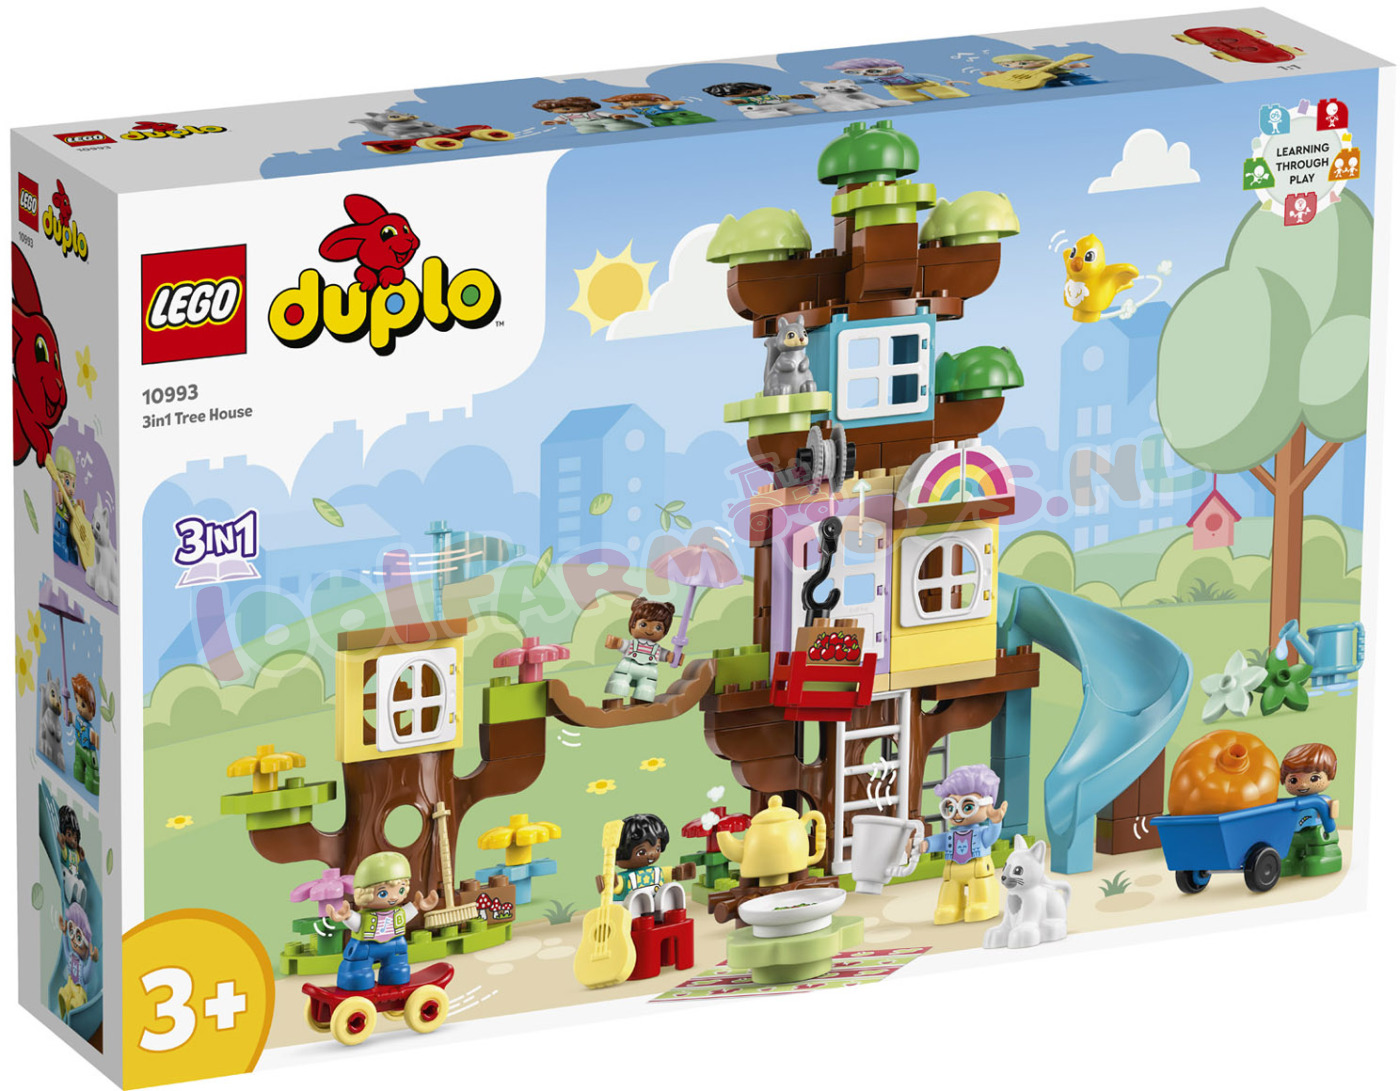 Kantine Menda City tempel LEGO DUPLO 3in1 BoomHut - 10993 - DUPLO - 1001Farmtoys landbouwspeelgoed -  Kleine avonturiers vanaf 3 jaar ontdekken talloze speelmogelijkheden met het